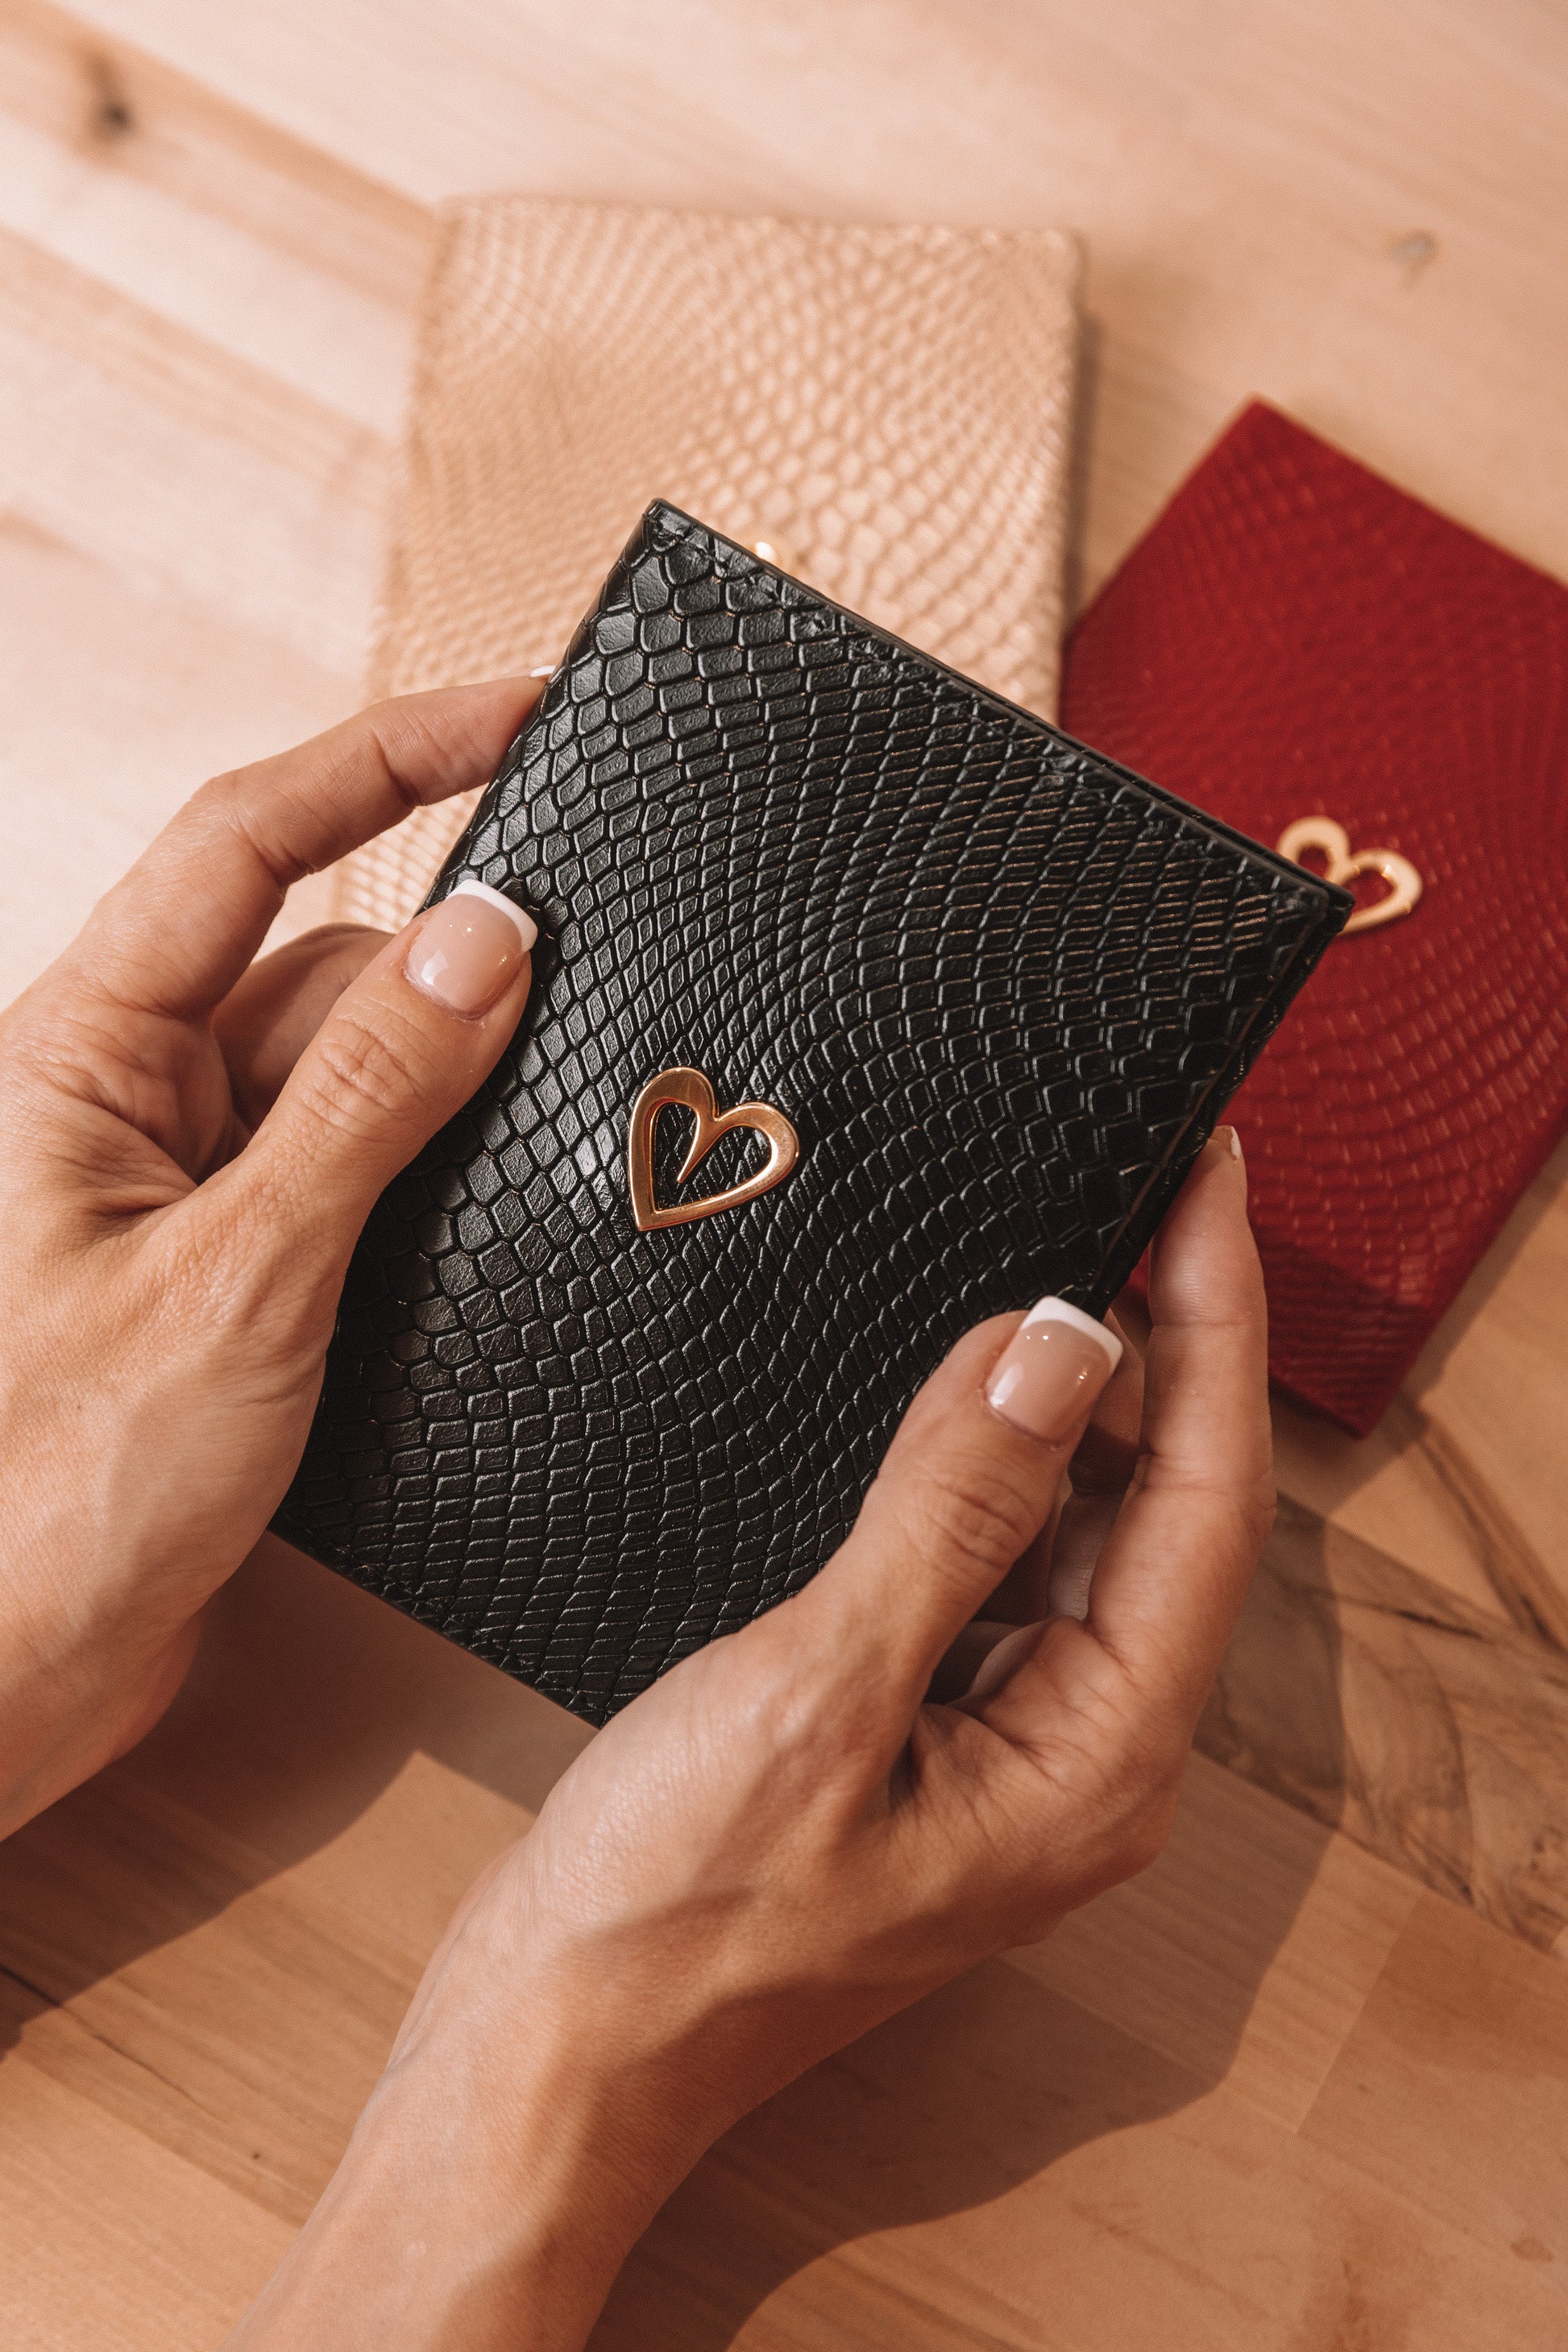 Louis Vuitton, Bags, 998 Authentic Louis Vuitton Card Holder Mens Wallet